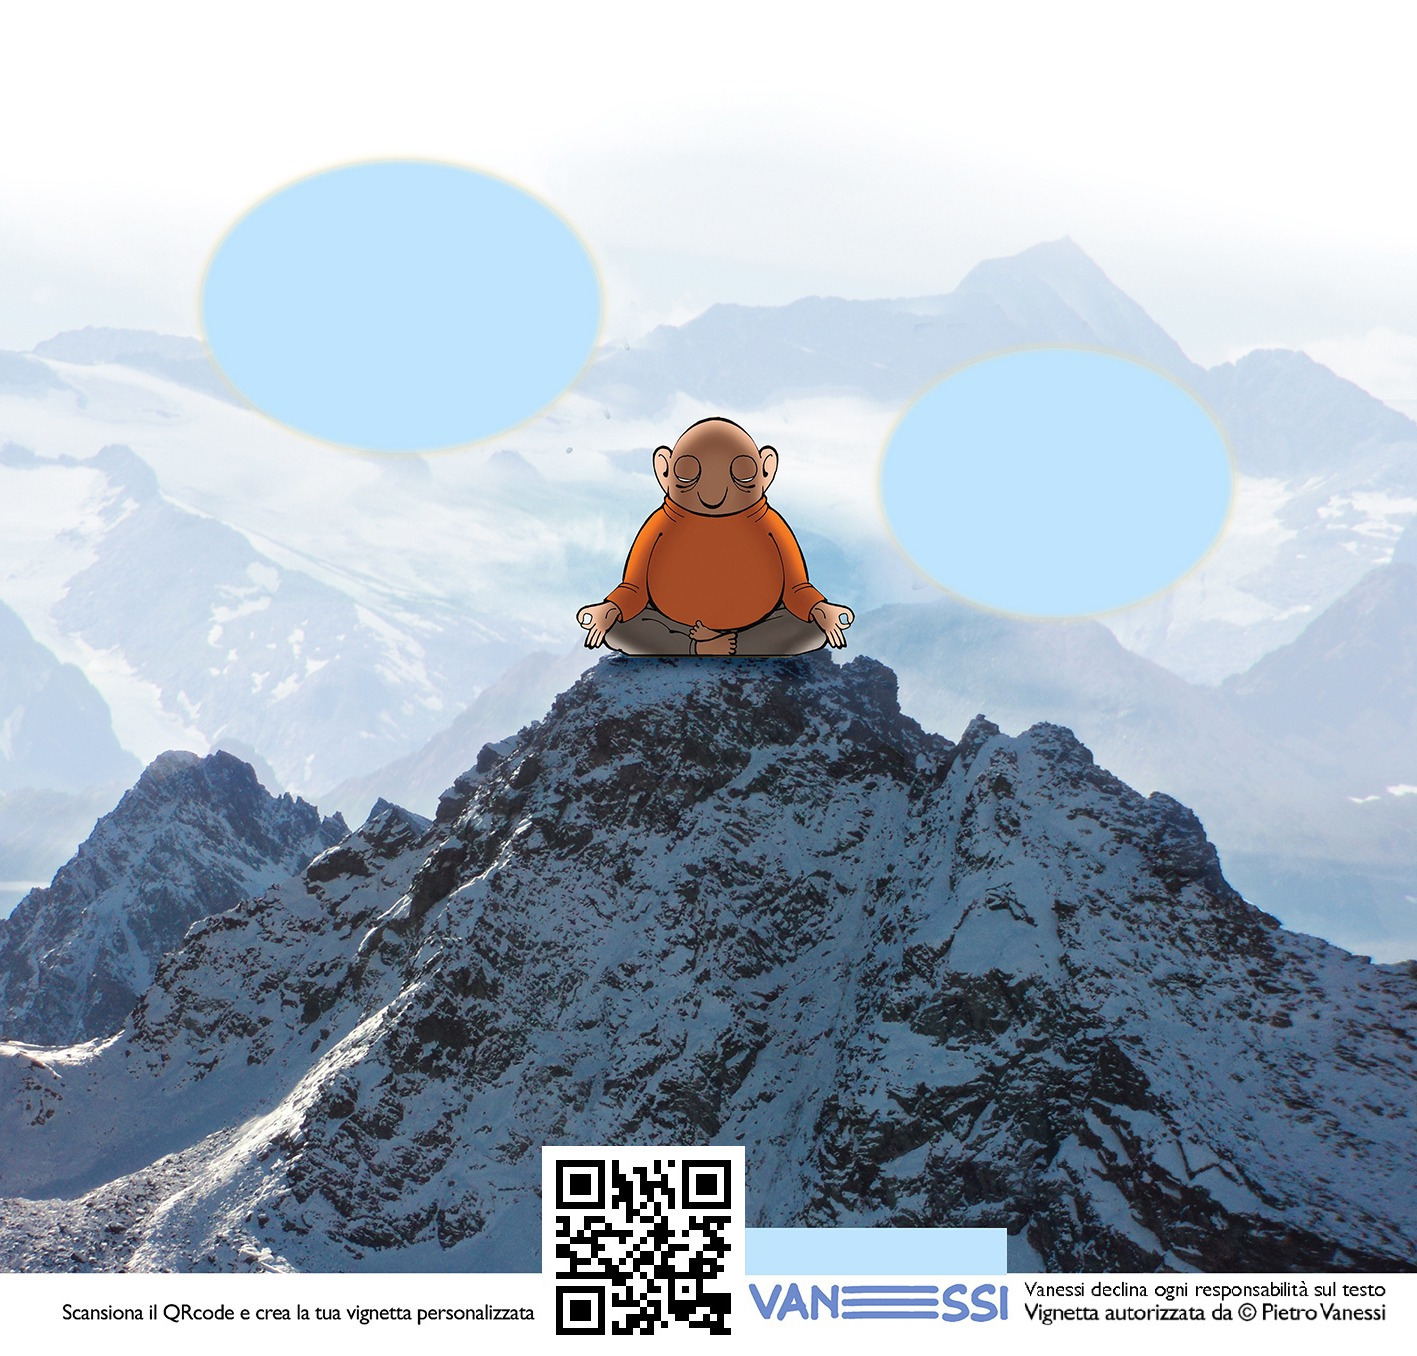 Personalizza una vignetta di Pietro Vanessi con l'Idiota Zen sulla vetta di una montagna